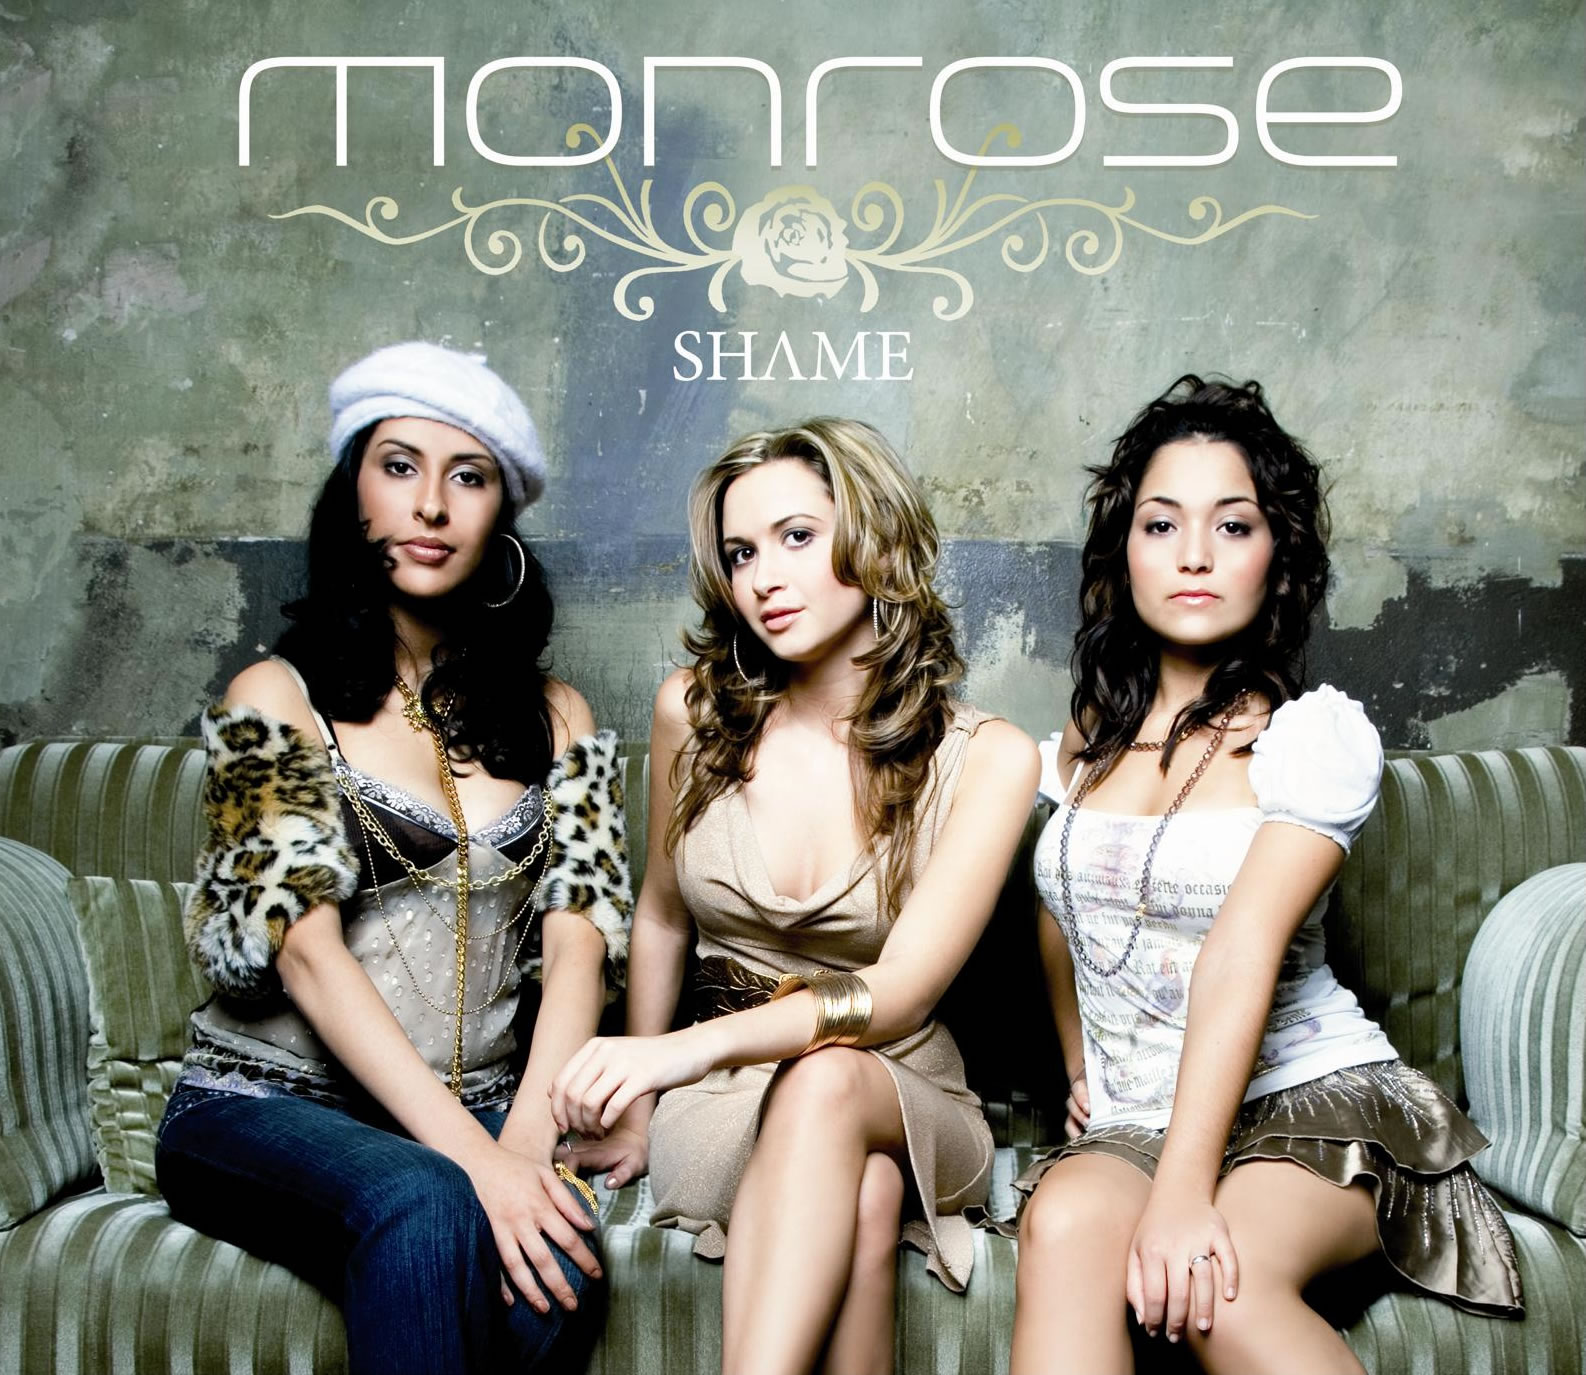 Monrose - Shame DVD 2006 скачать торрент бесплатно.